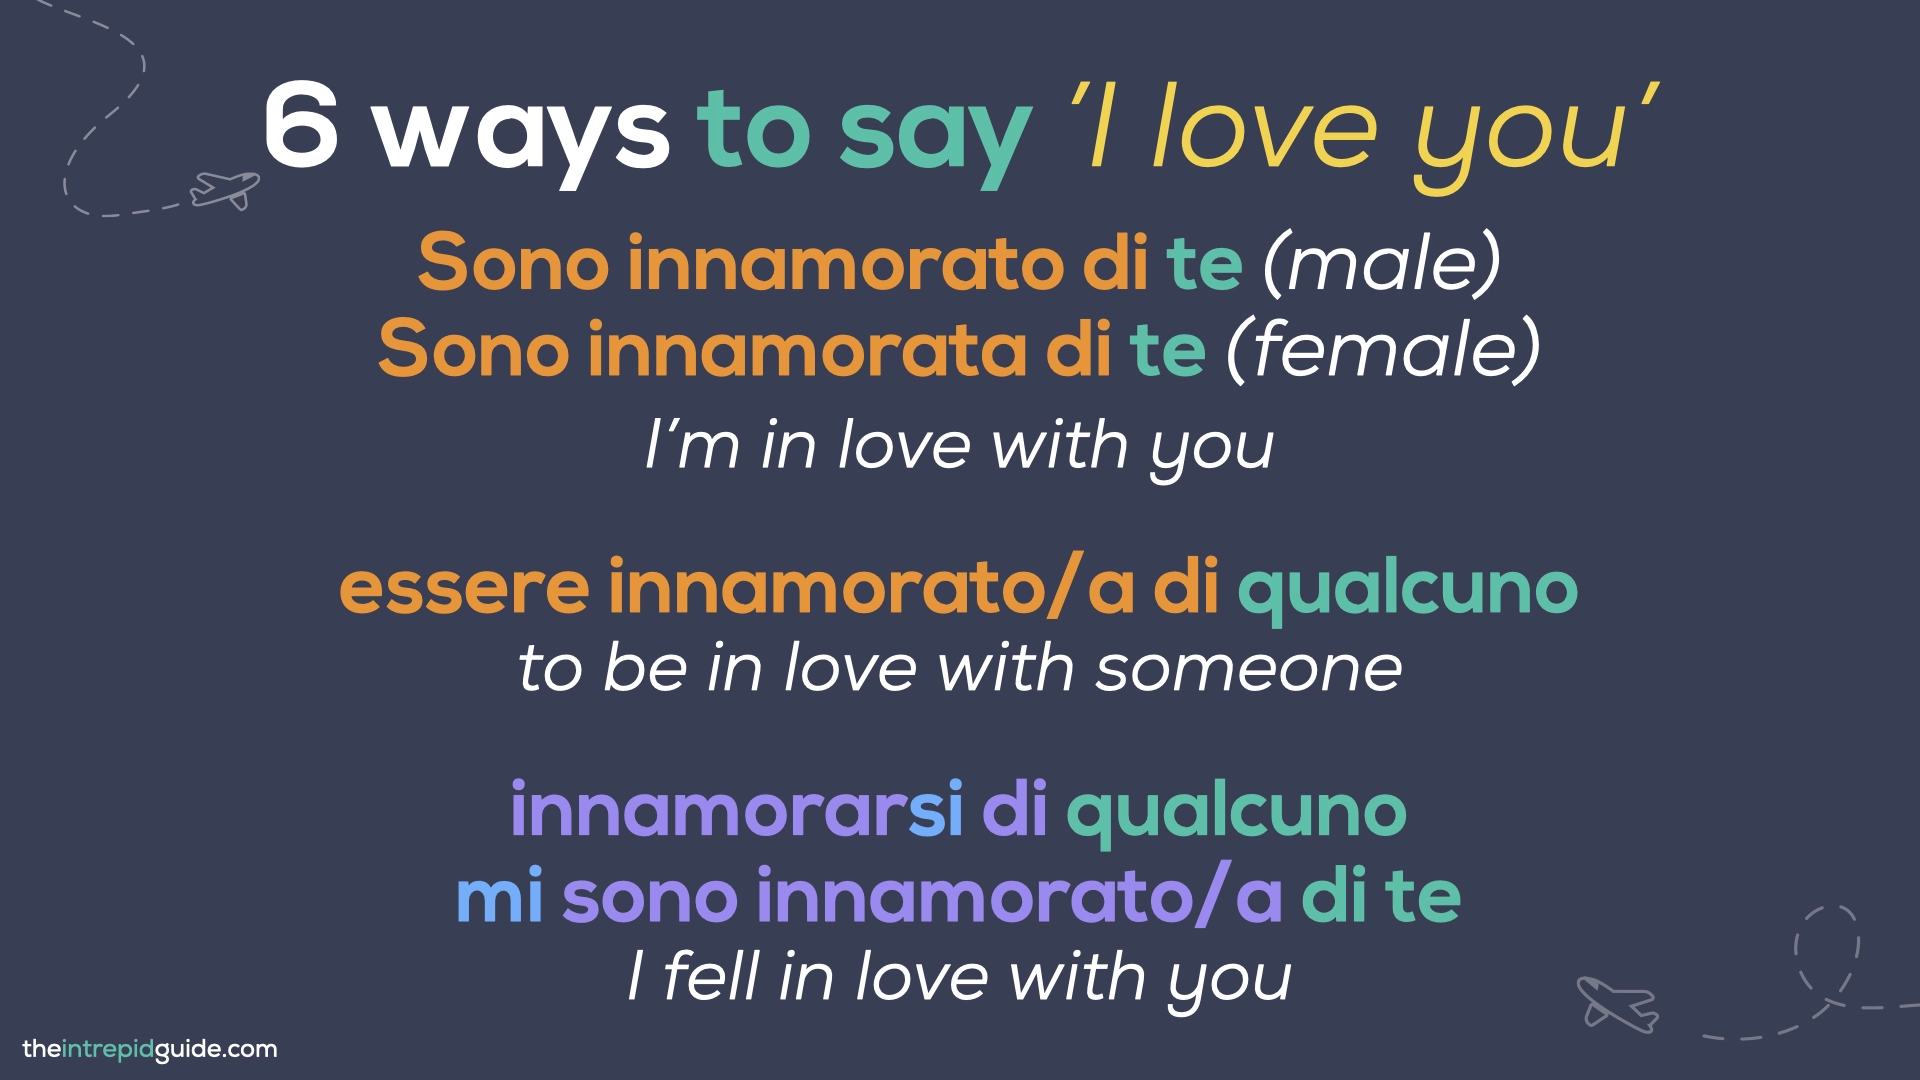 How to say 'I love you' in Italian - Sono innamorato di te